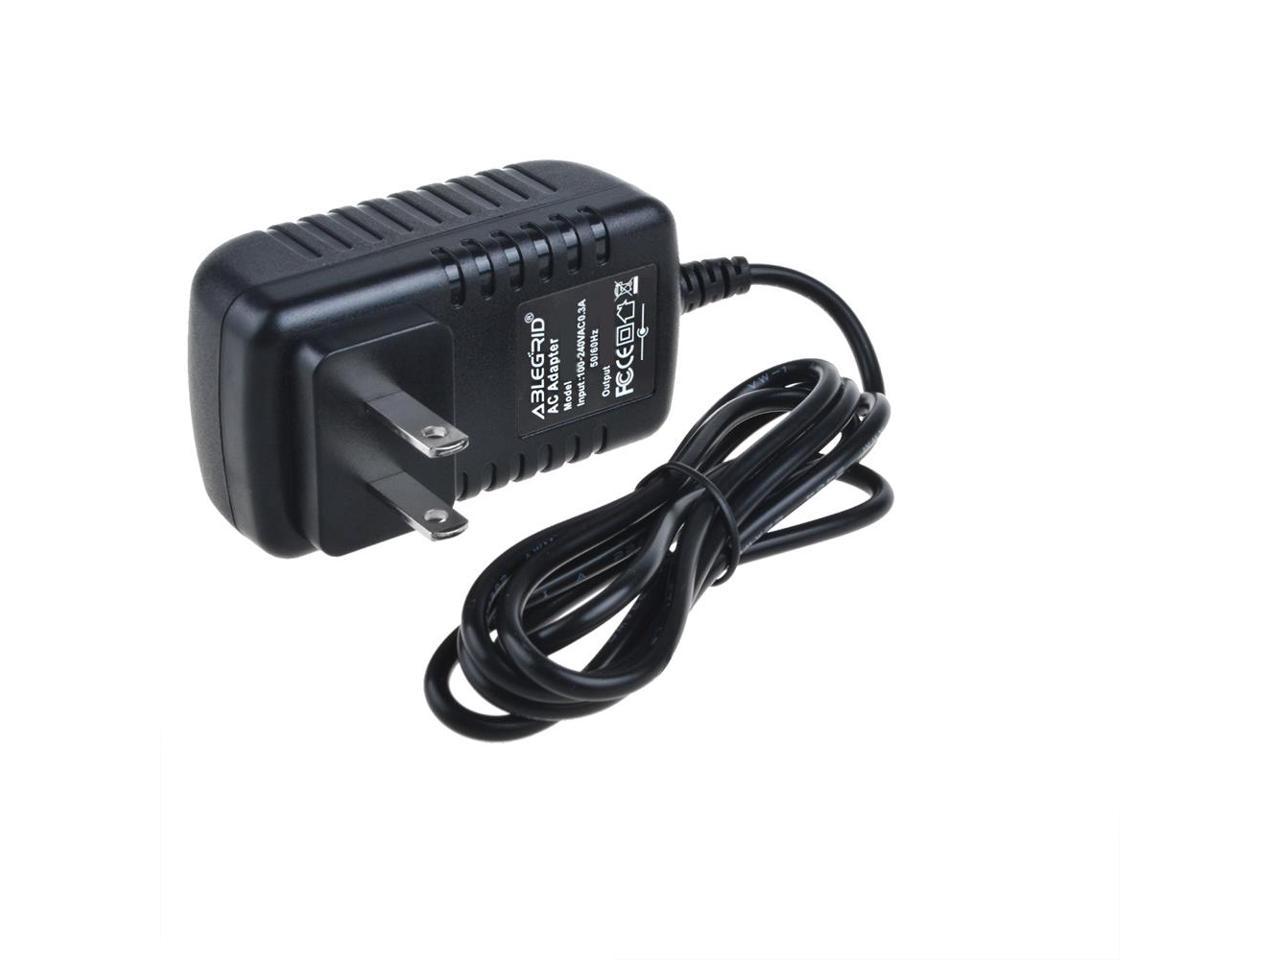 15V DC Car Adapter Charger For PENTAX PT-A4312 PocketJet 3 Plus Thermal Printer 